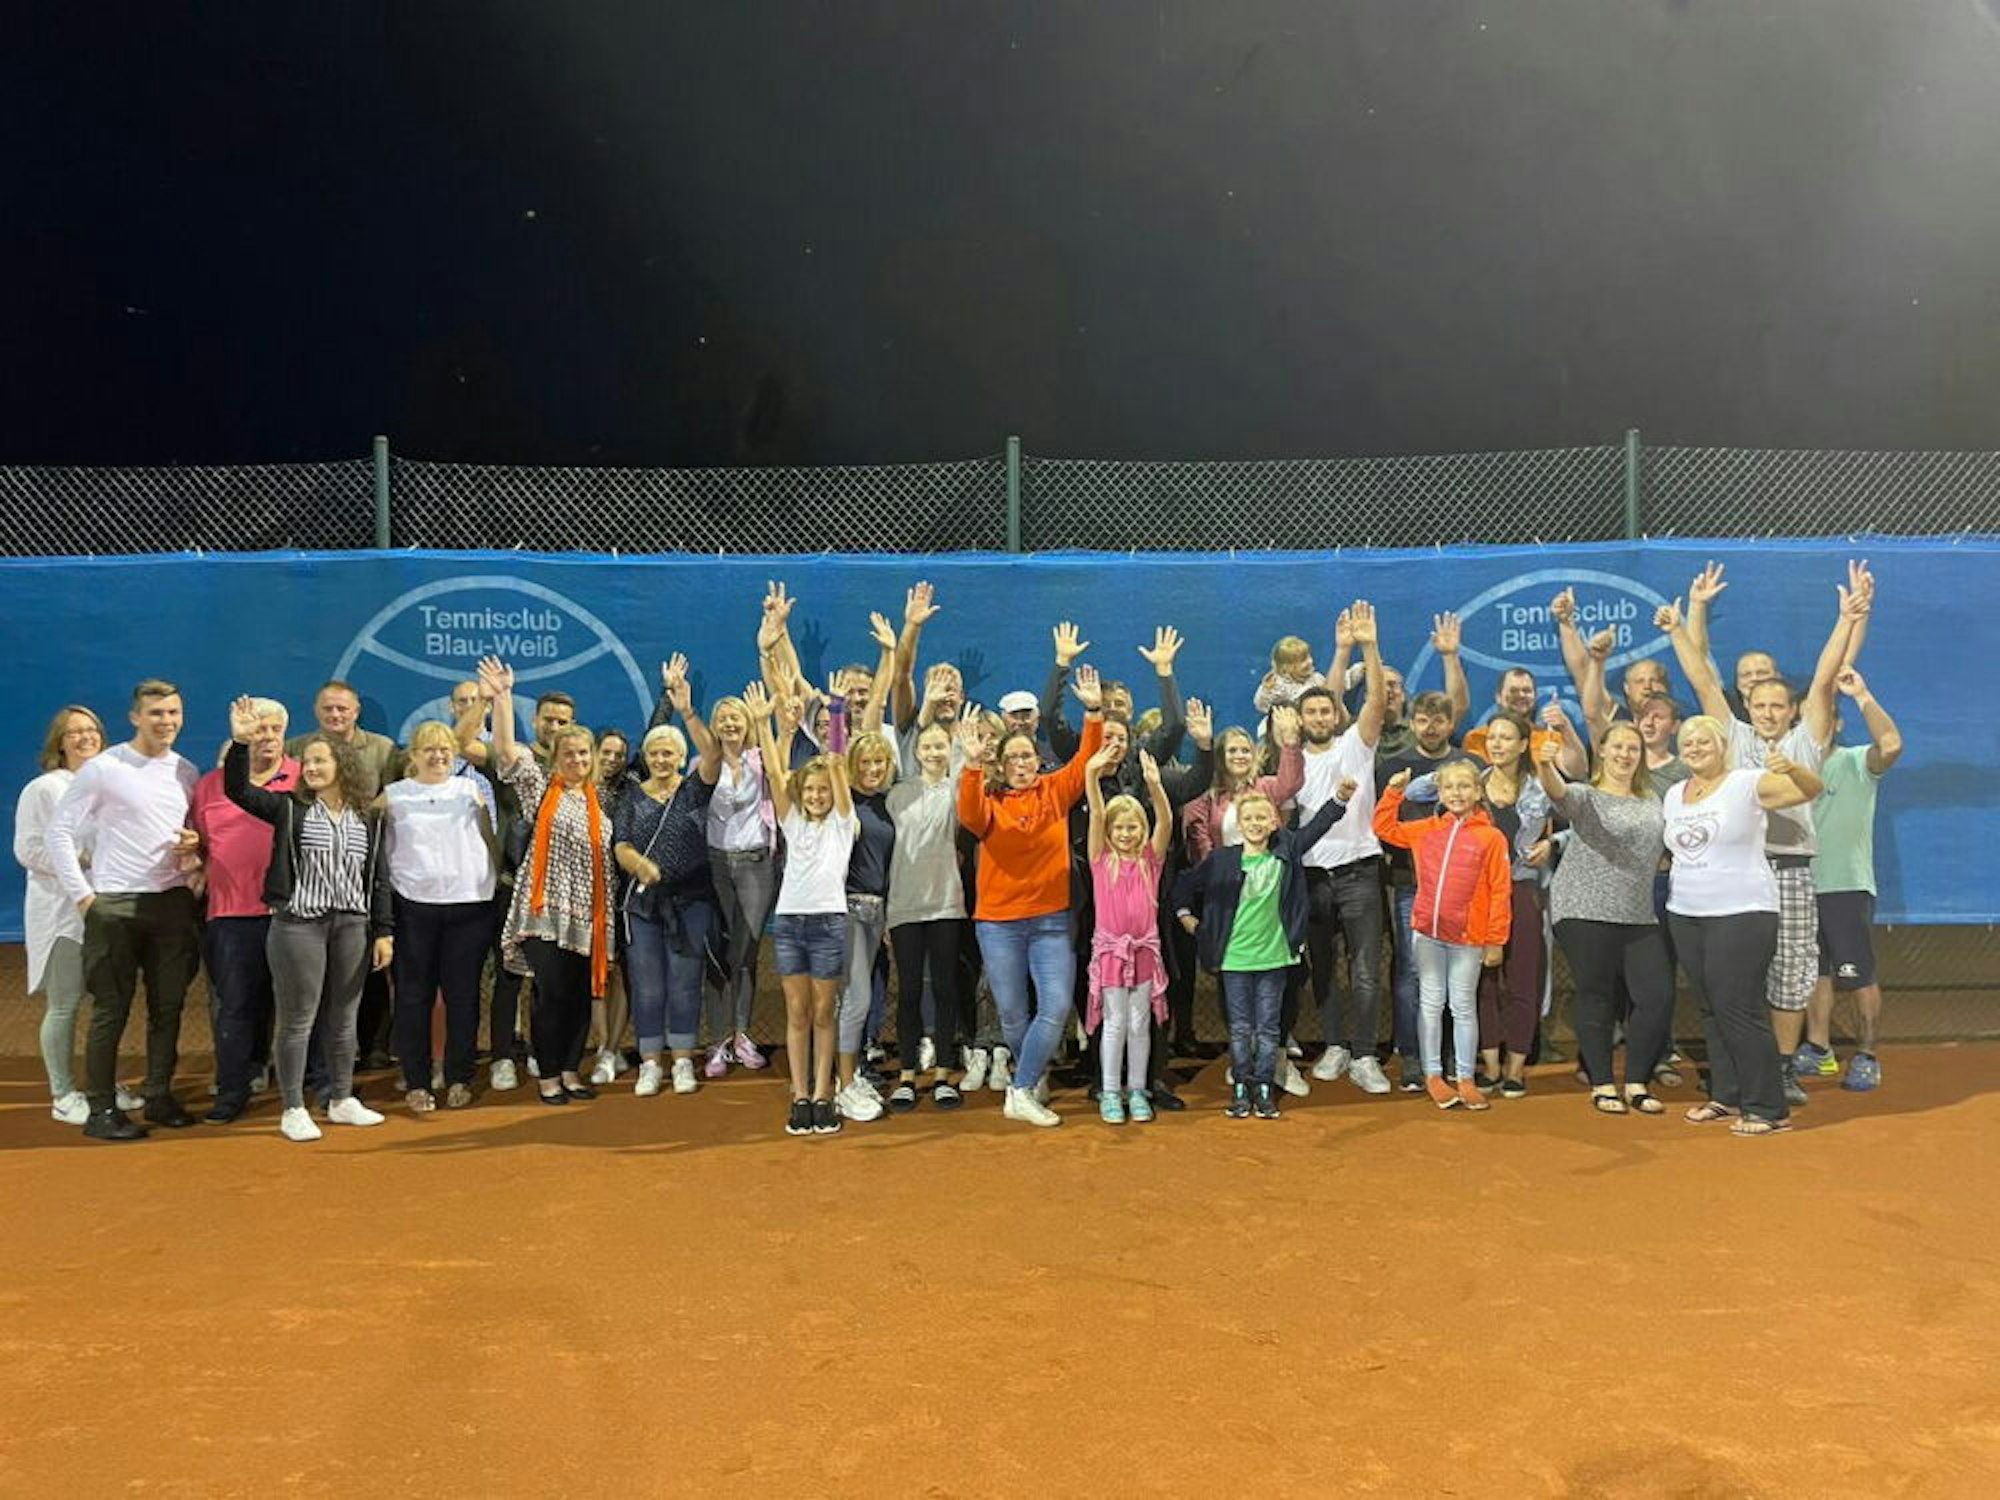 Der Tennisclub Türnich brachte aus Bayern angereiste Helfer unter. Hinterher gab es ein Gruppenfoto gemeinsam mit Mitgliedern.